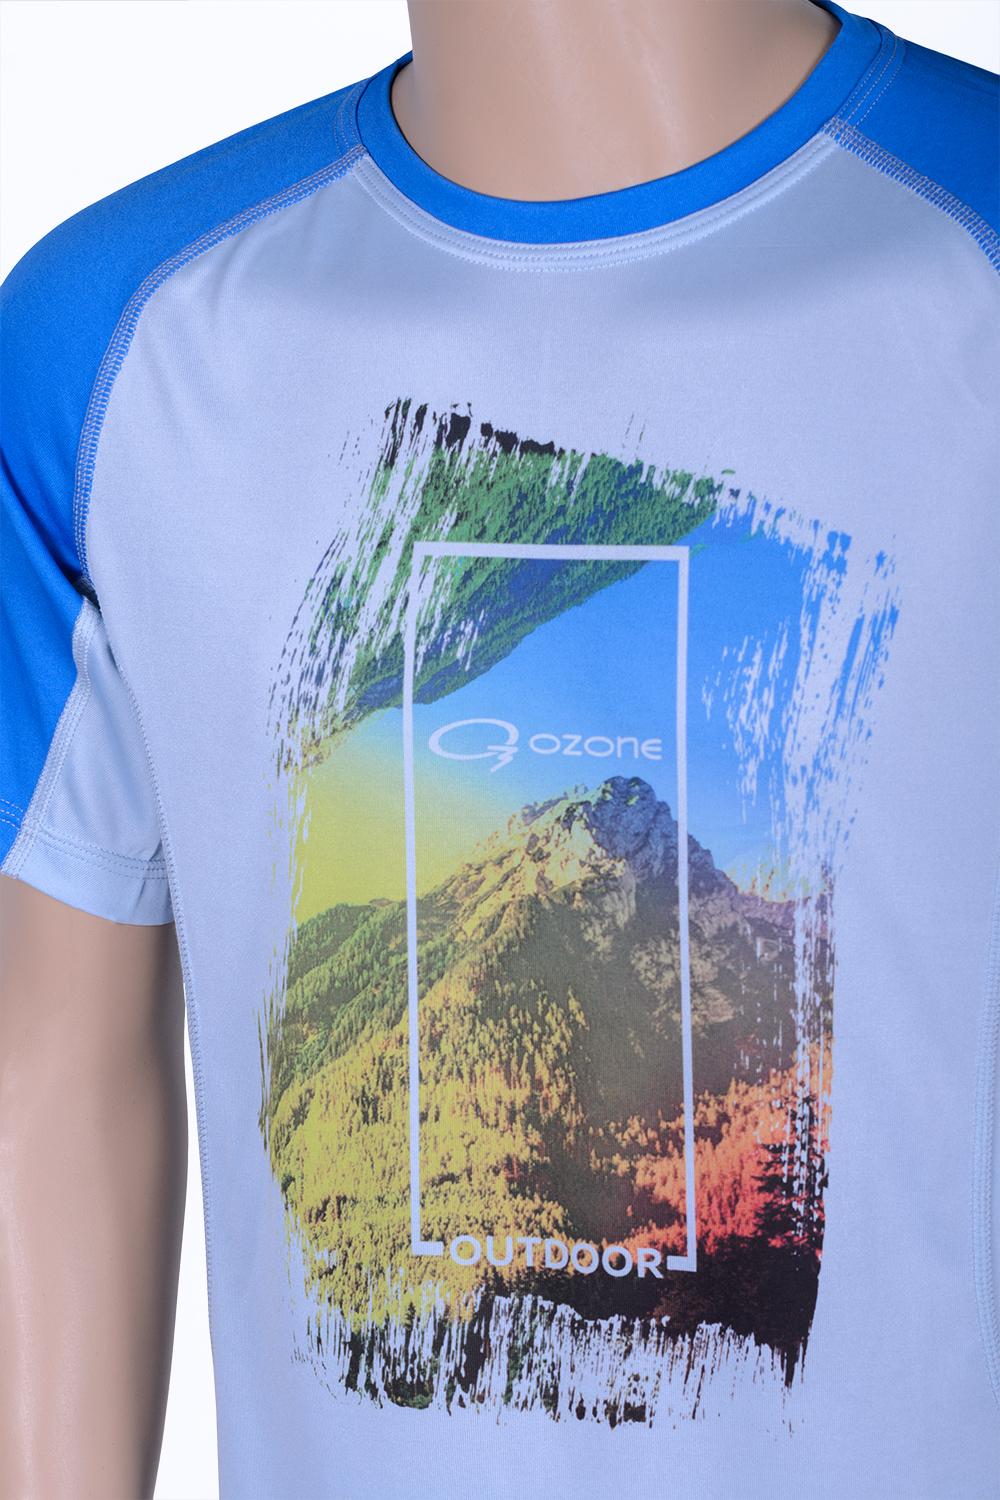 Озон футболки шорты. Футболка Озон. Майка Озон. Крутые футболки на Озоне женские. Озон мужские футболки.